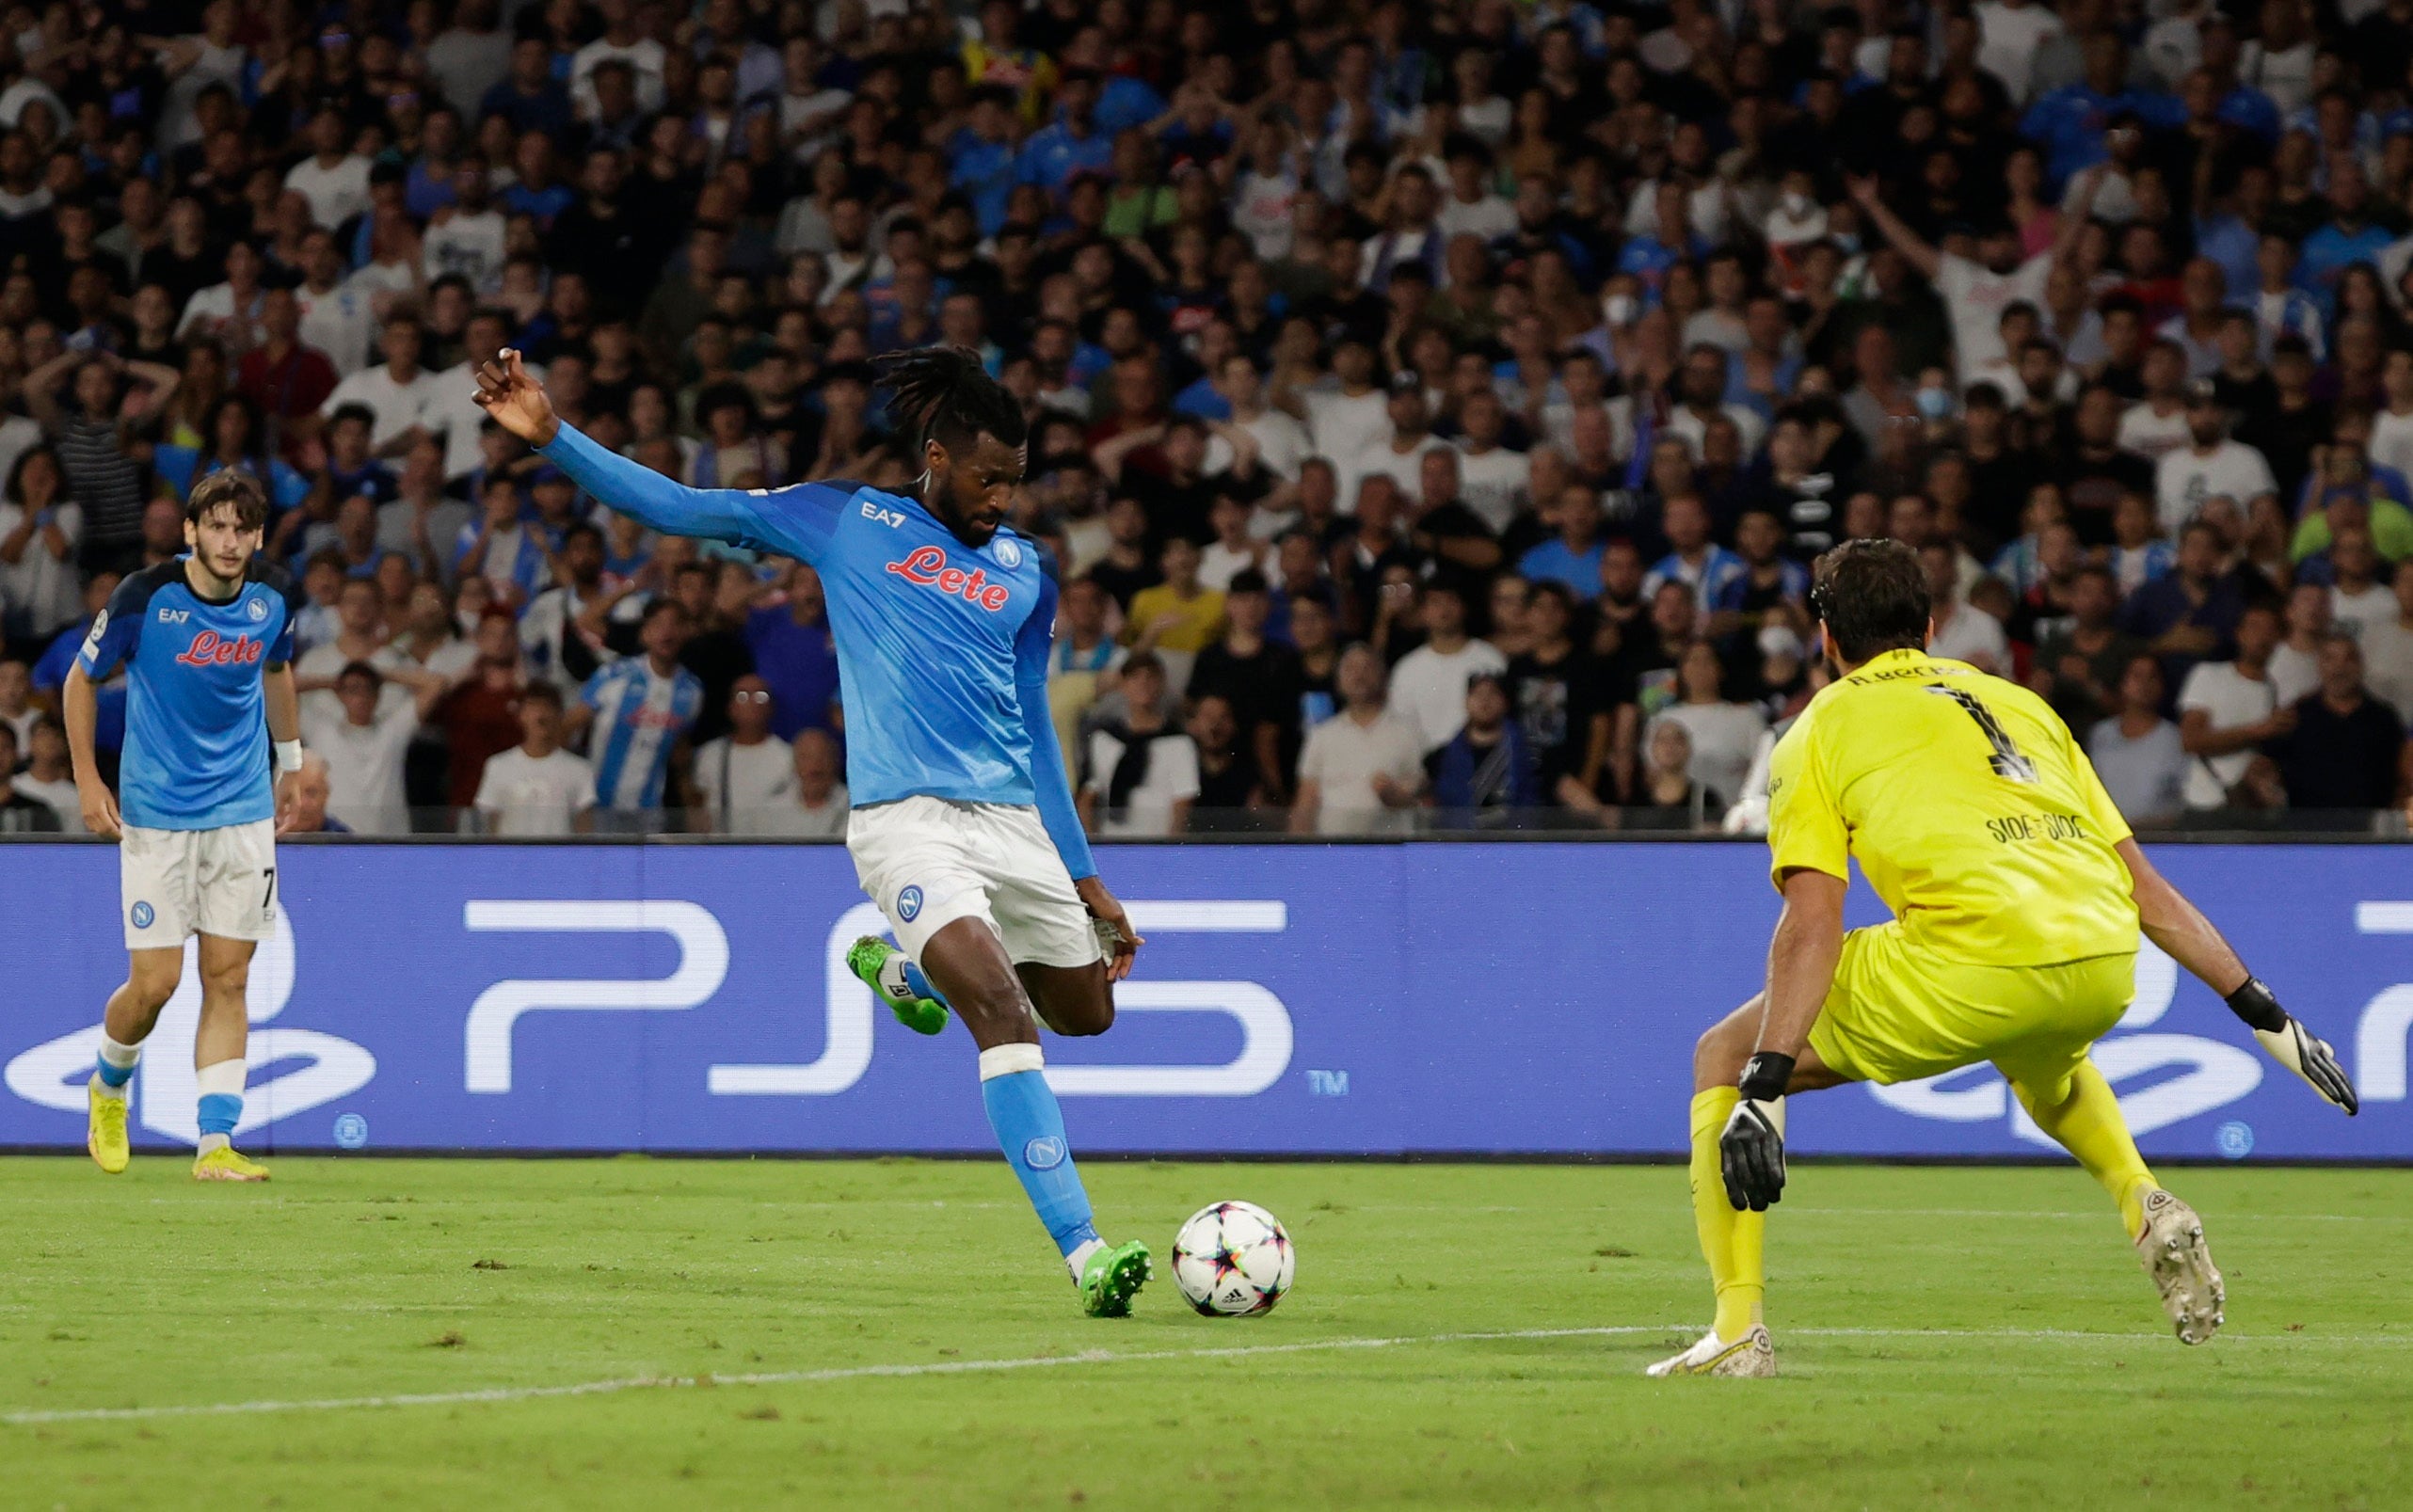 Zambo Anguissa slides home Napoli’s second goal